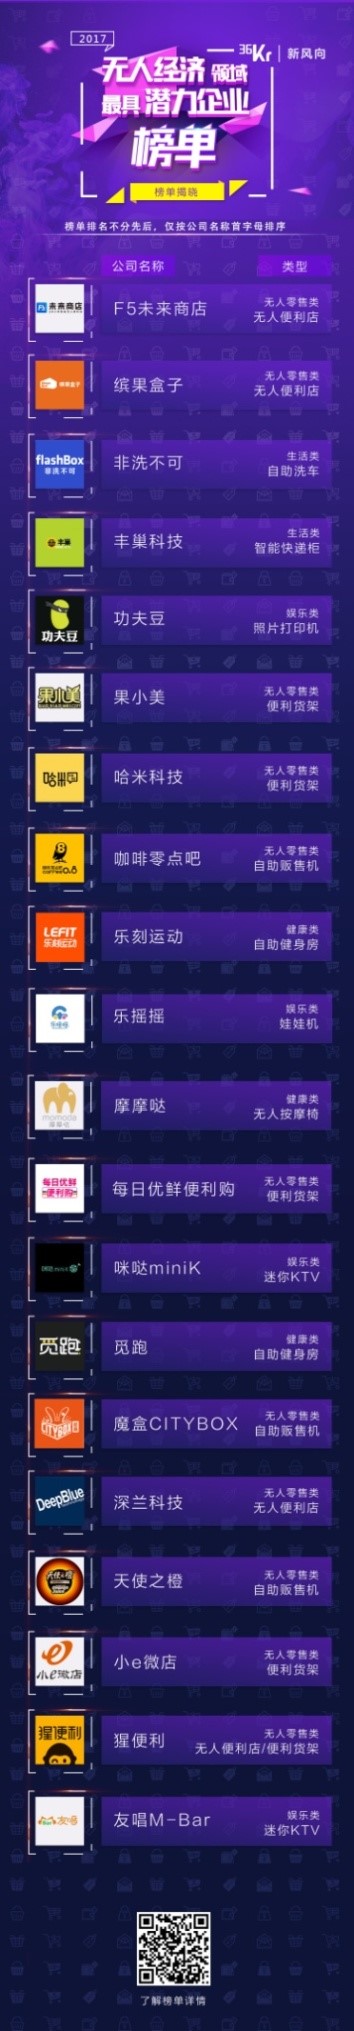 摩摩哒入围“中国无人经济领域最具潜力企业top20”榜单